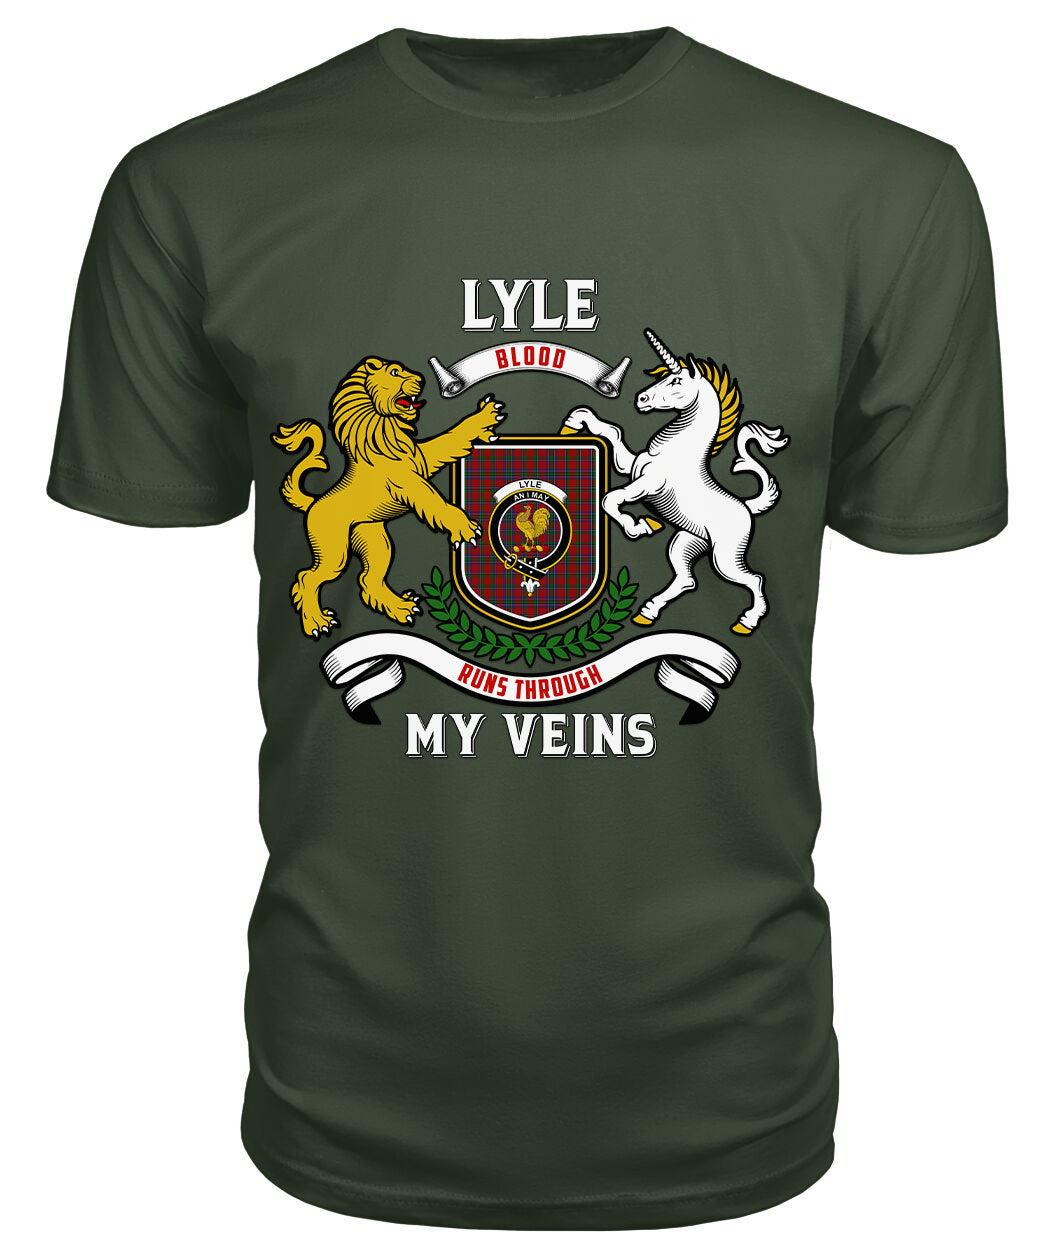 Lyle Tartan Crest 2D T-shirt - Blood Runs Through My Veins Style